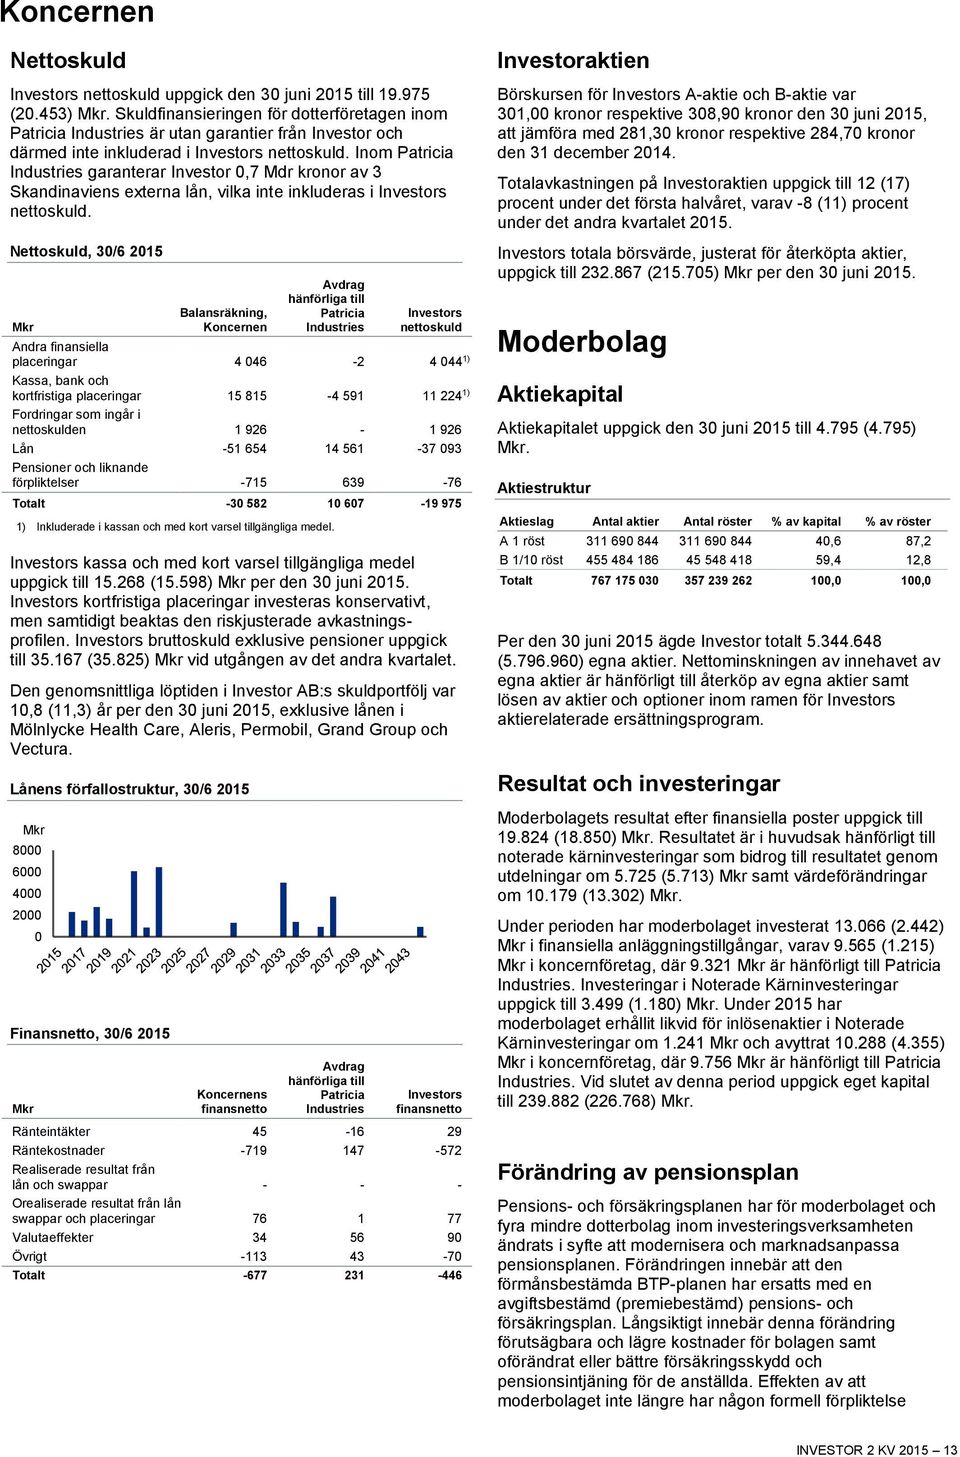 Inom Patricia Industries garanterar Investor 0,7 Mdr kronor av 3 Skandinaviens externa lån, vilka inte inkluderas i Investors nettoskuld.